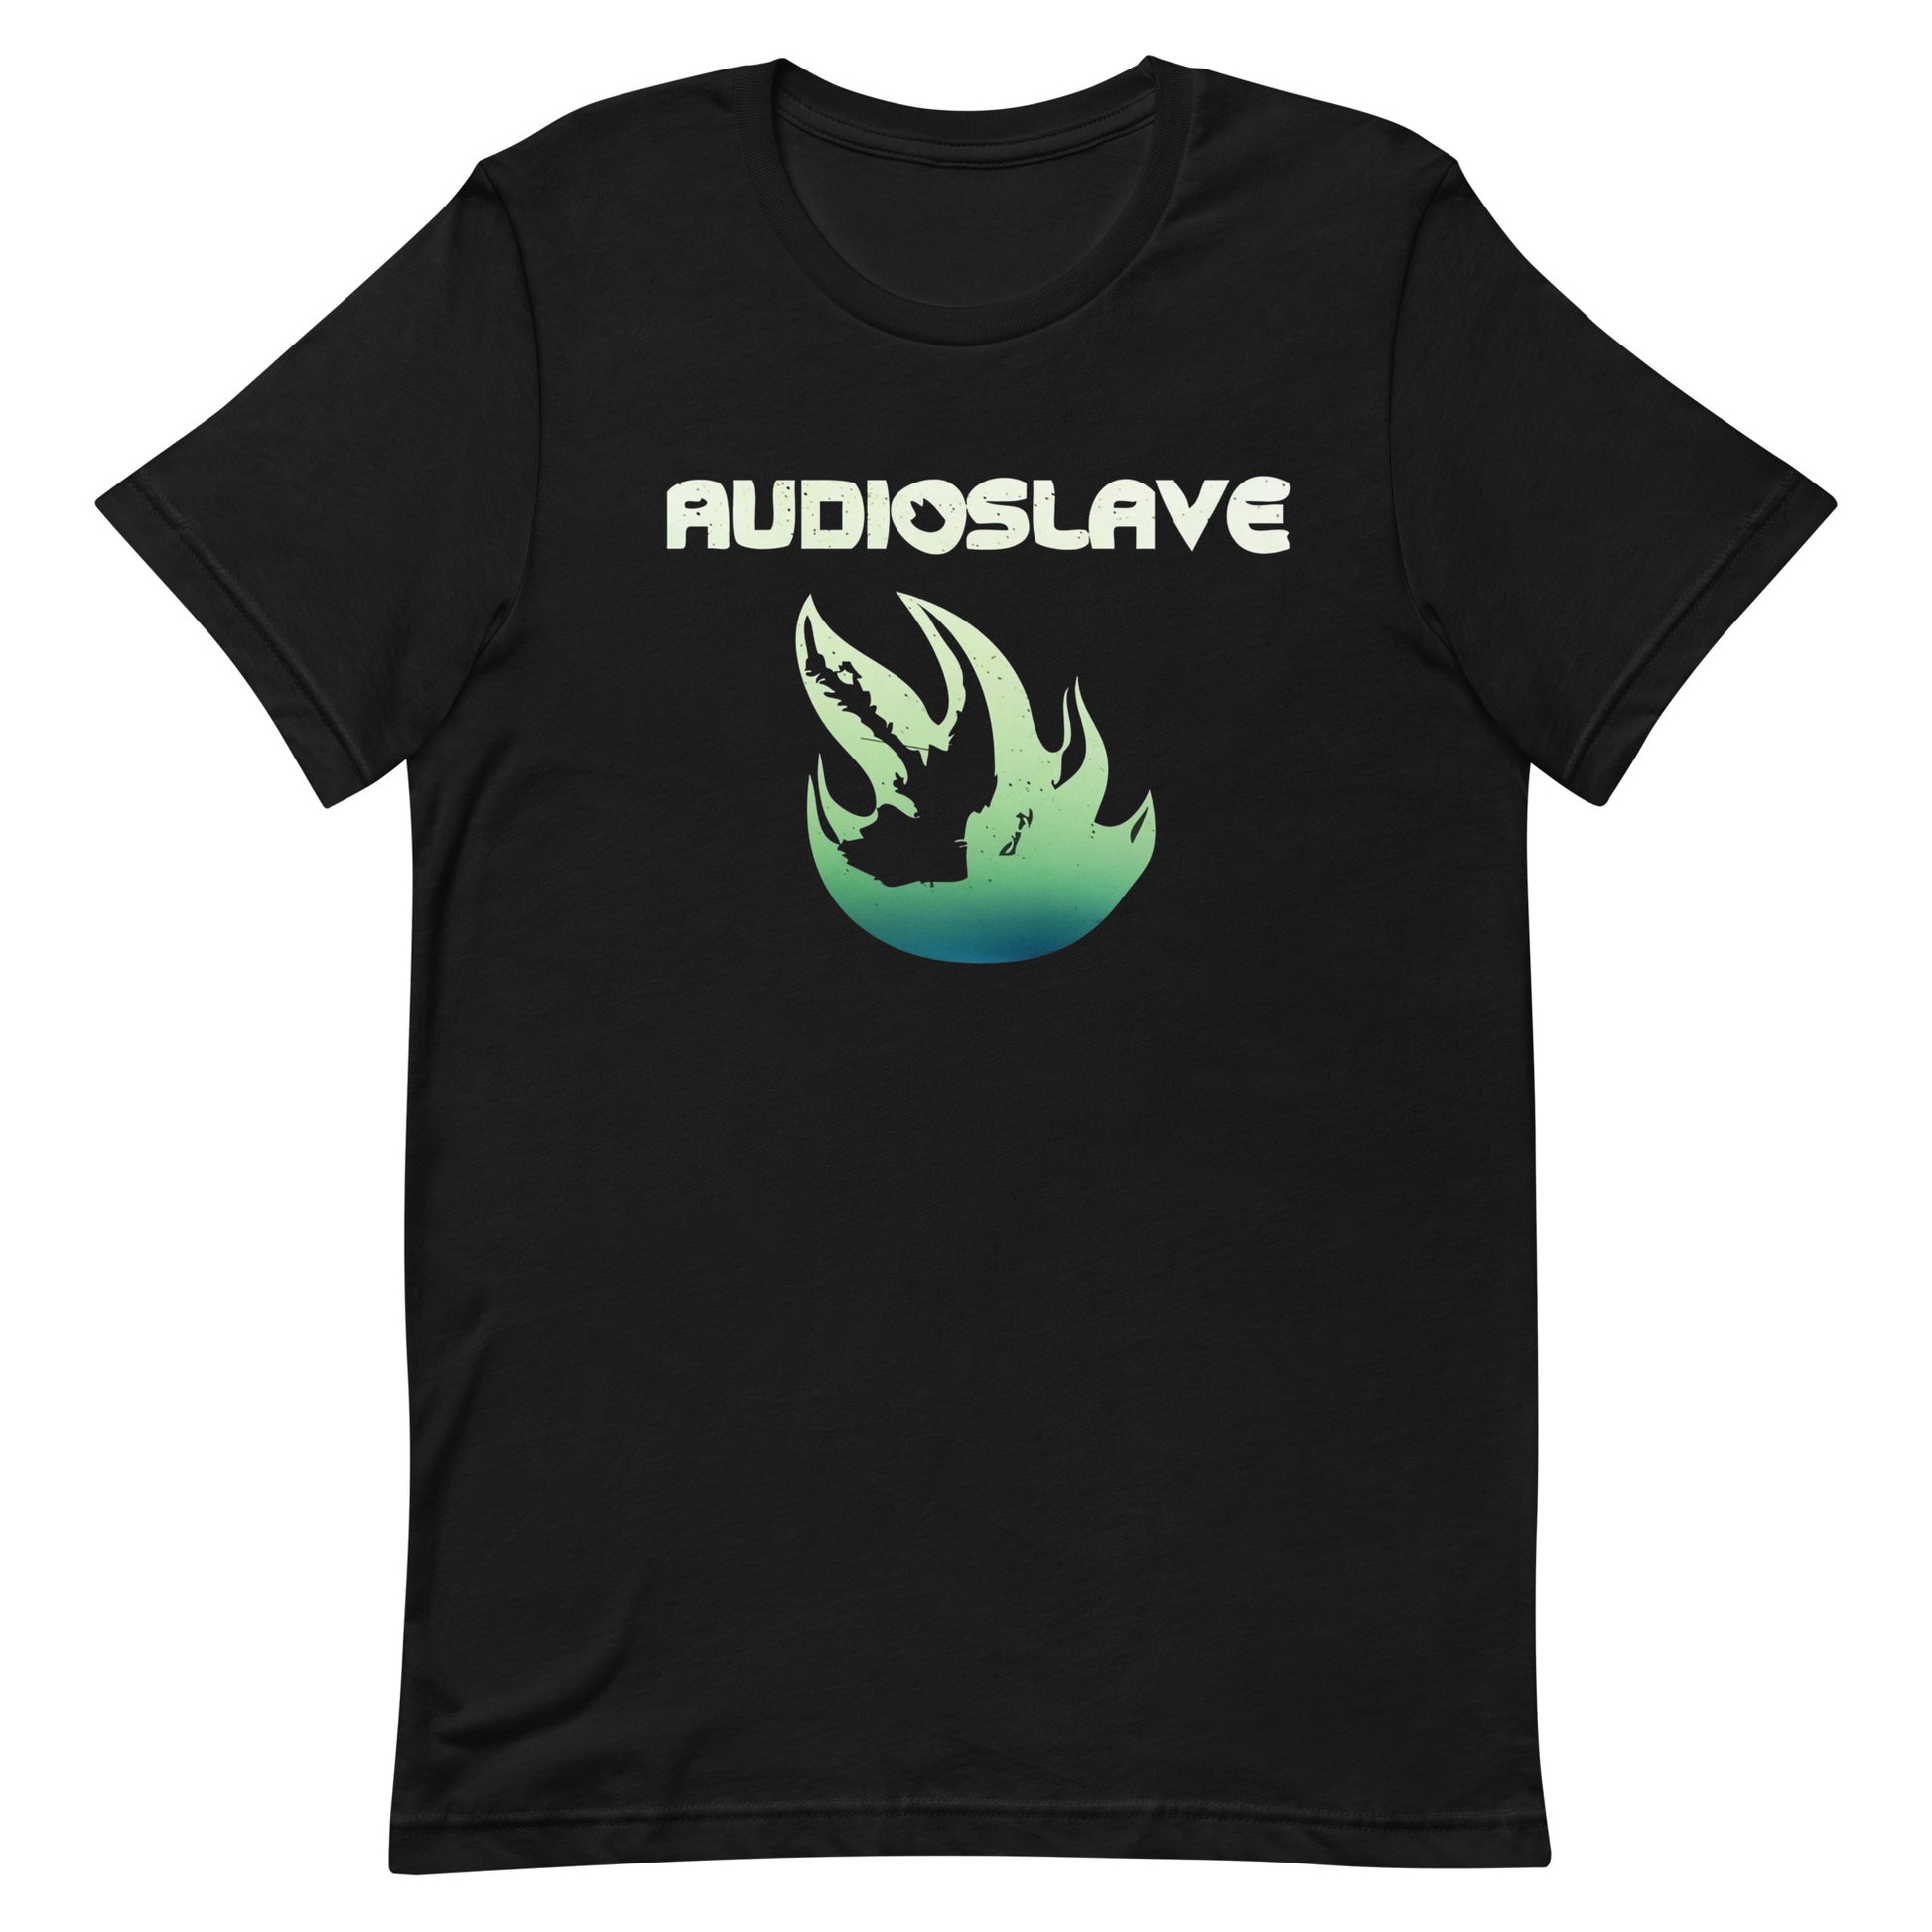 Playera Audioslave Fire disponible en SUPERSTAR, nuestras opciones son unisex de alta calidad. diferentes opciones de envío